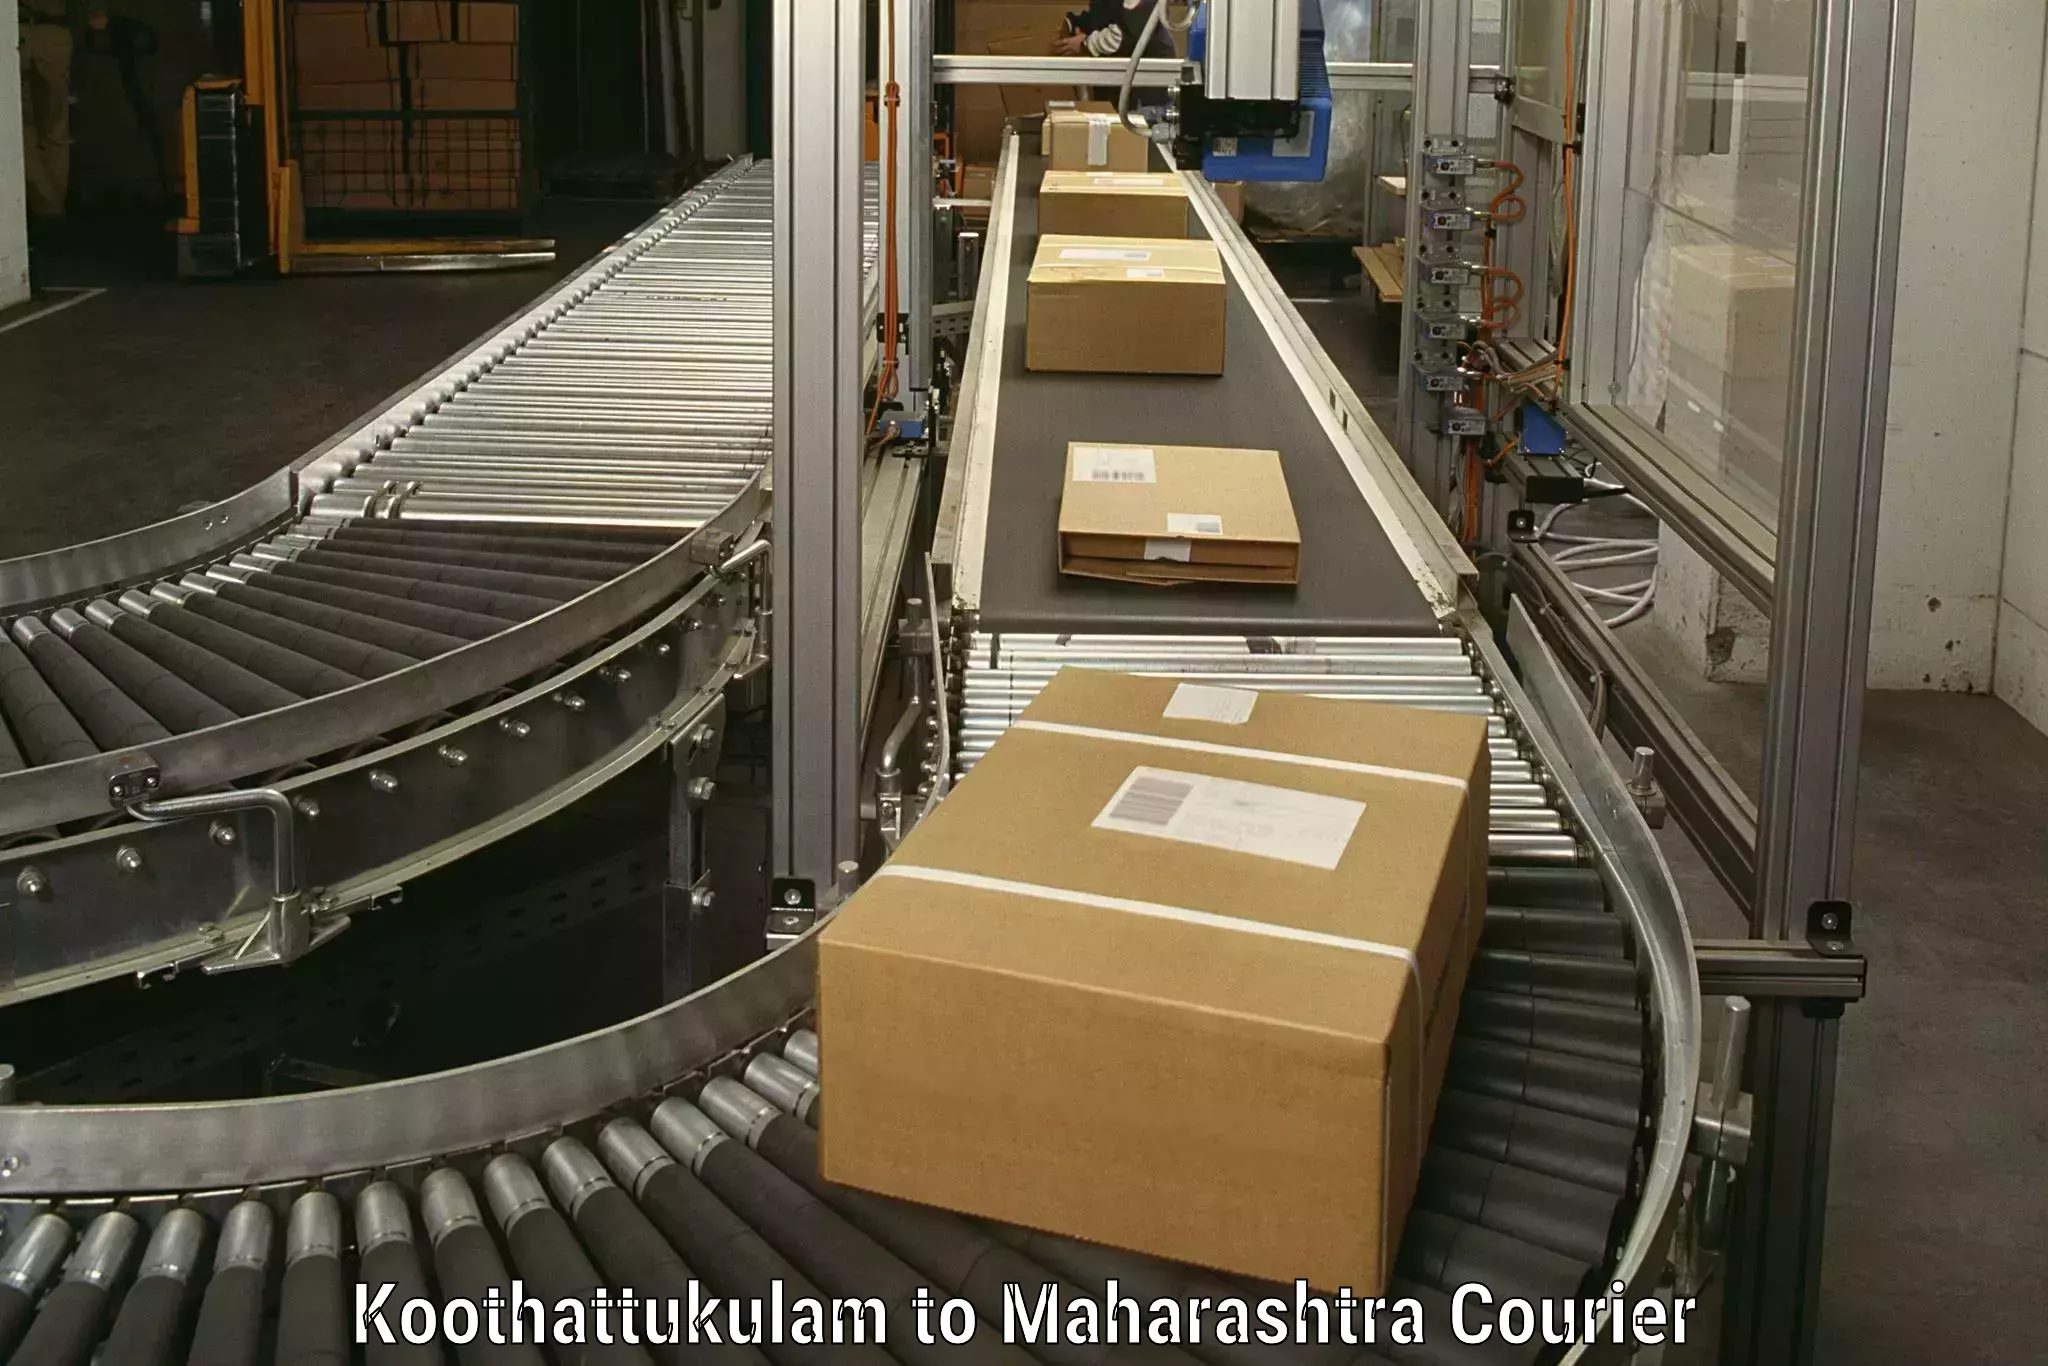 Furniture transport service in Koothattukulam to Mumbai Port